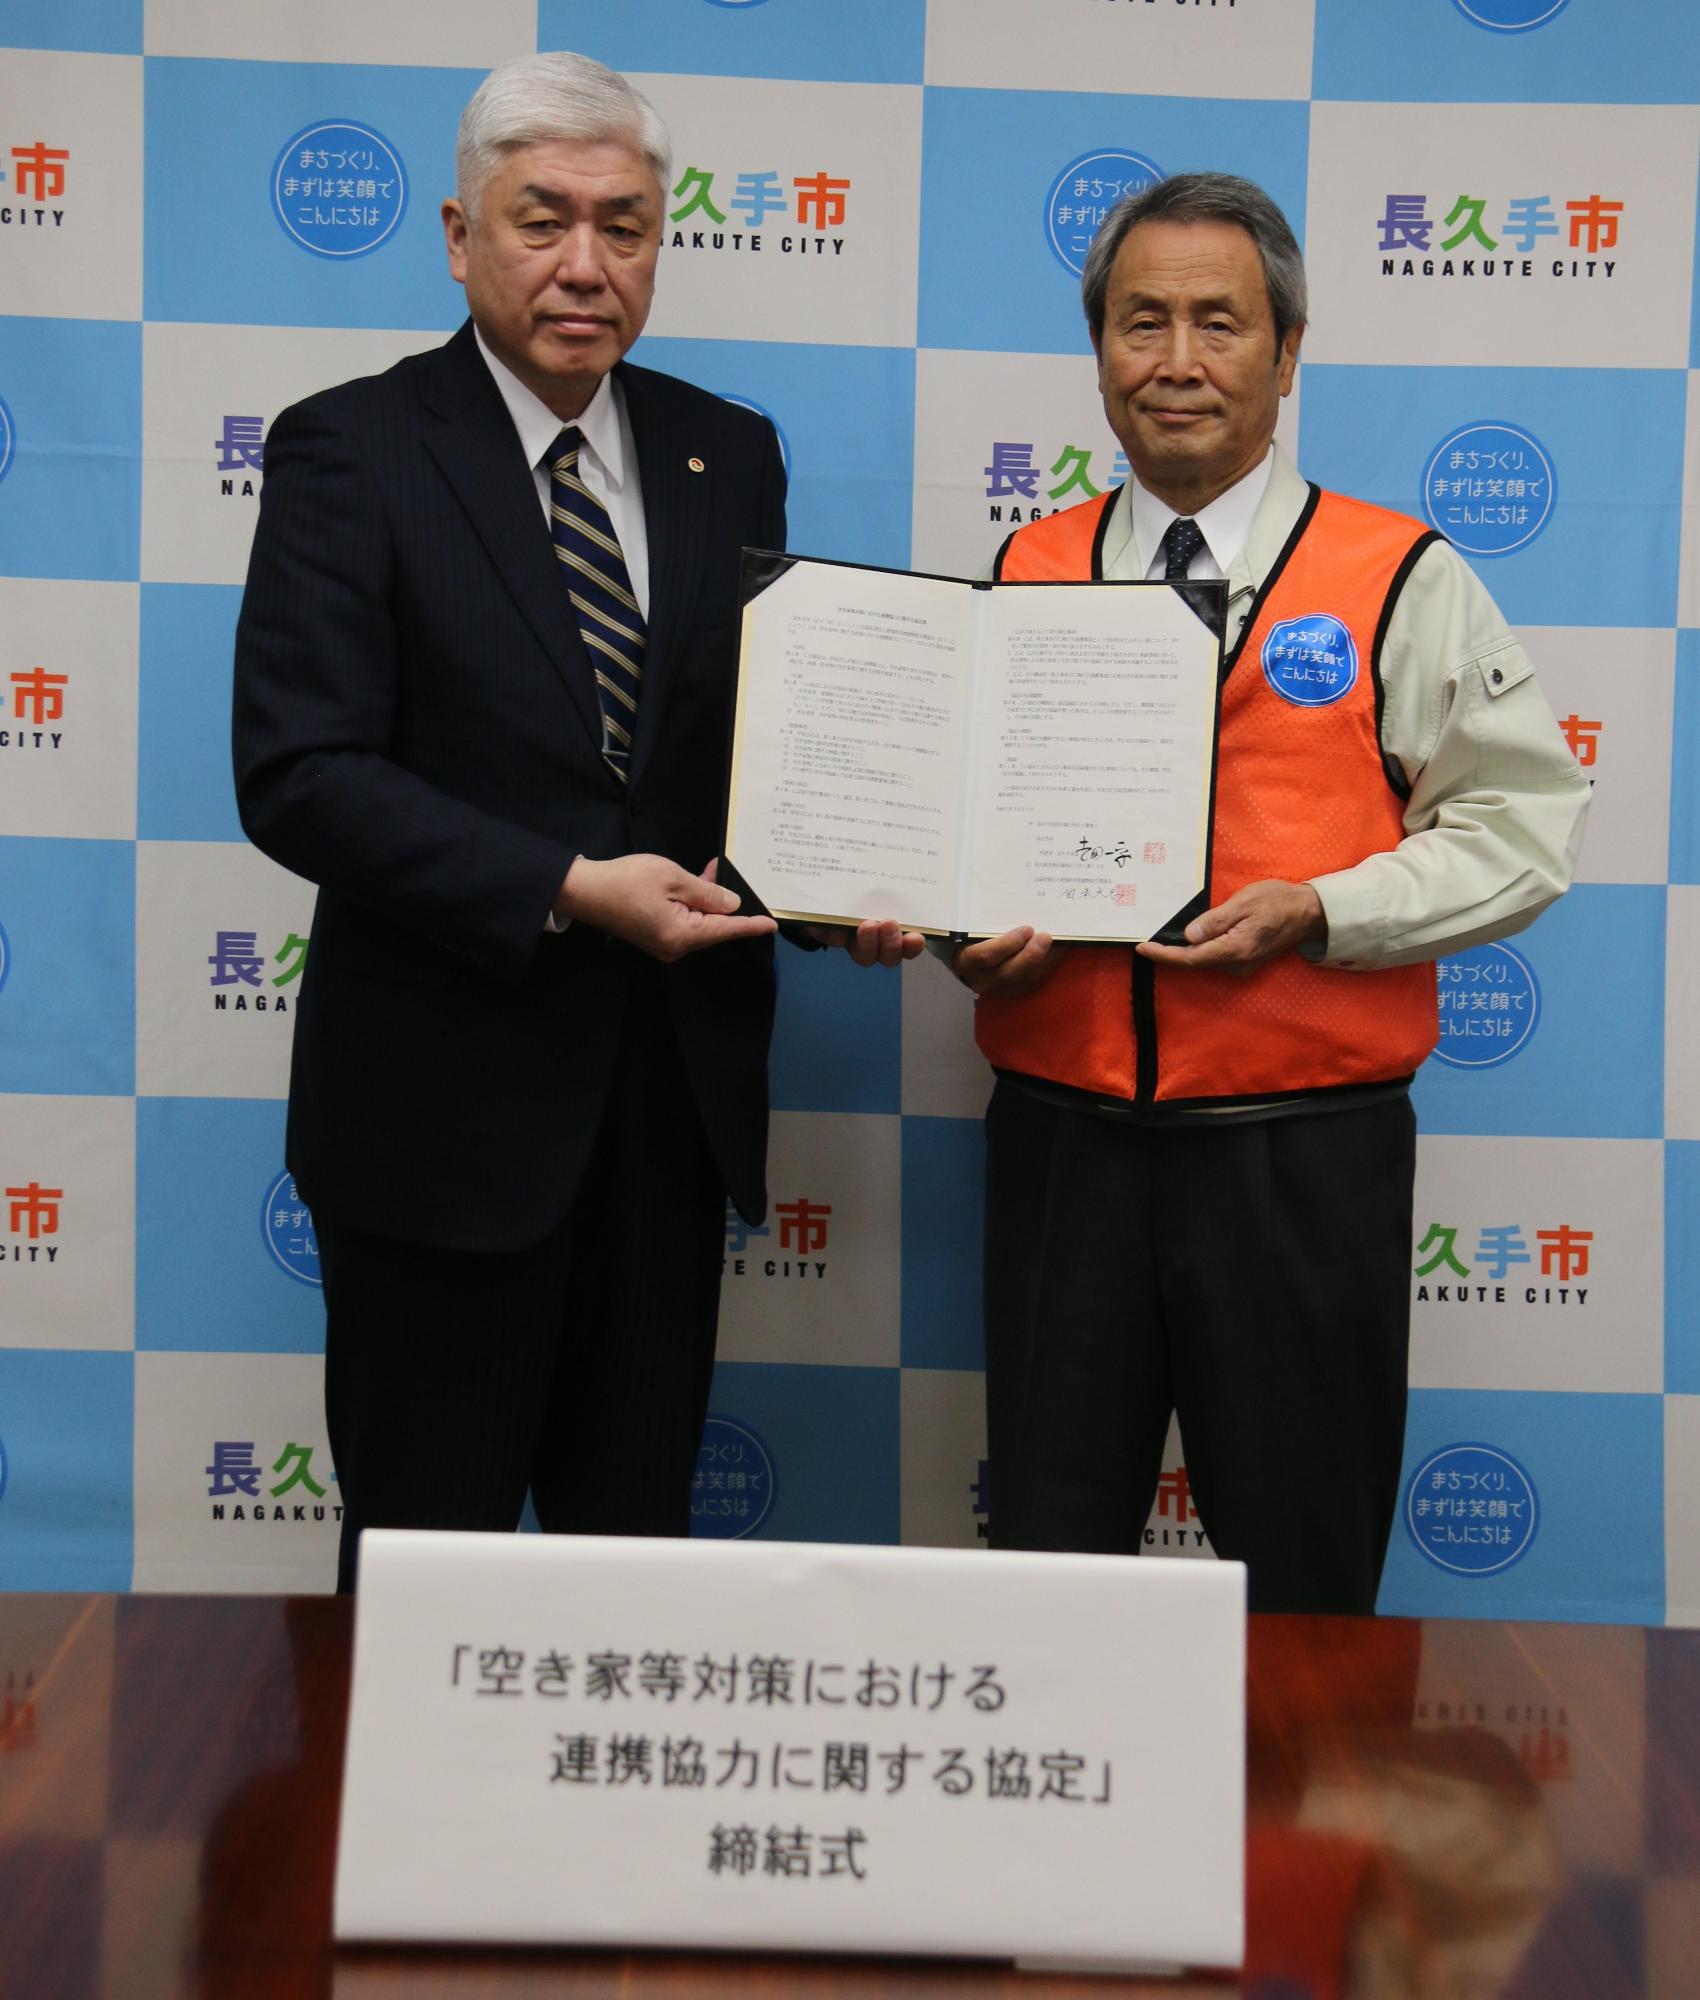 締結式にて公益社団法人愛知県宅地建物取引業協会と長久手市の代表が一緒に協定書を持って記念撮影している写真